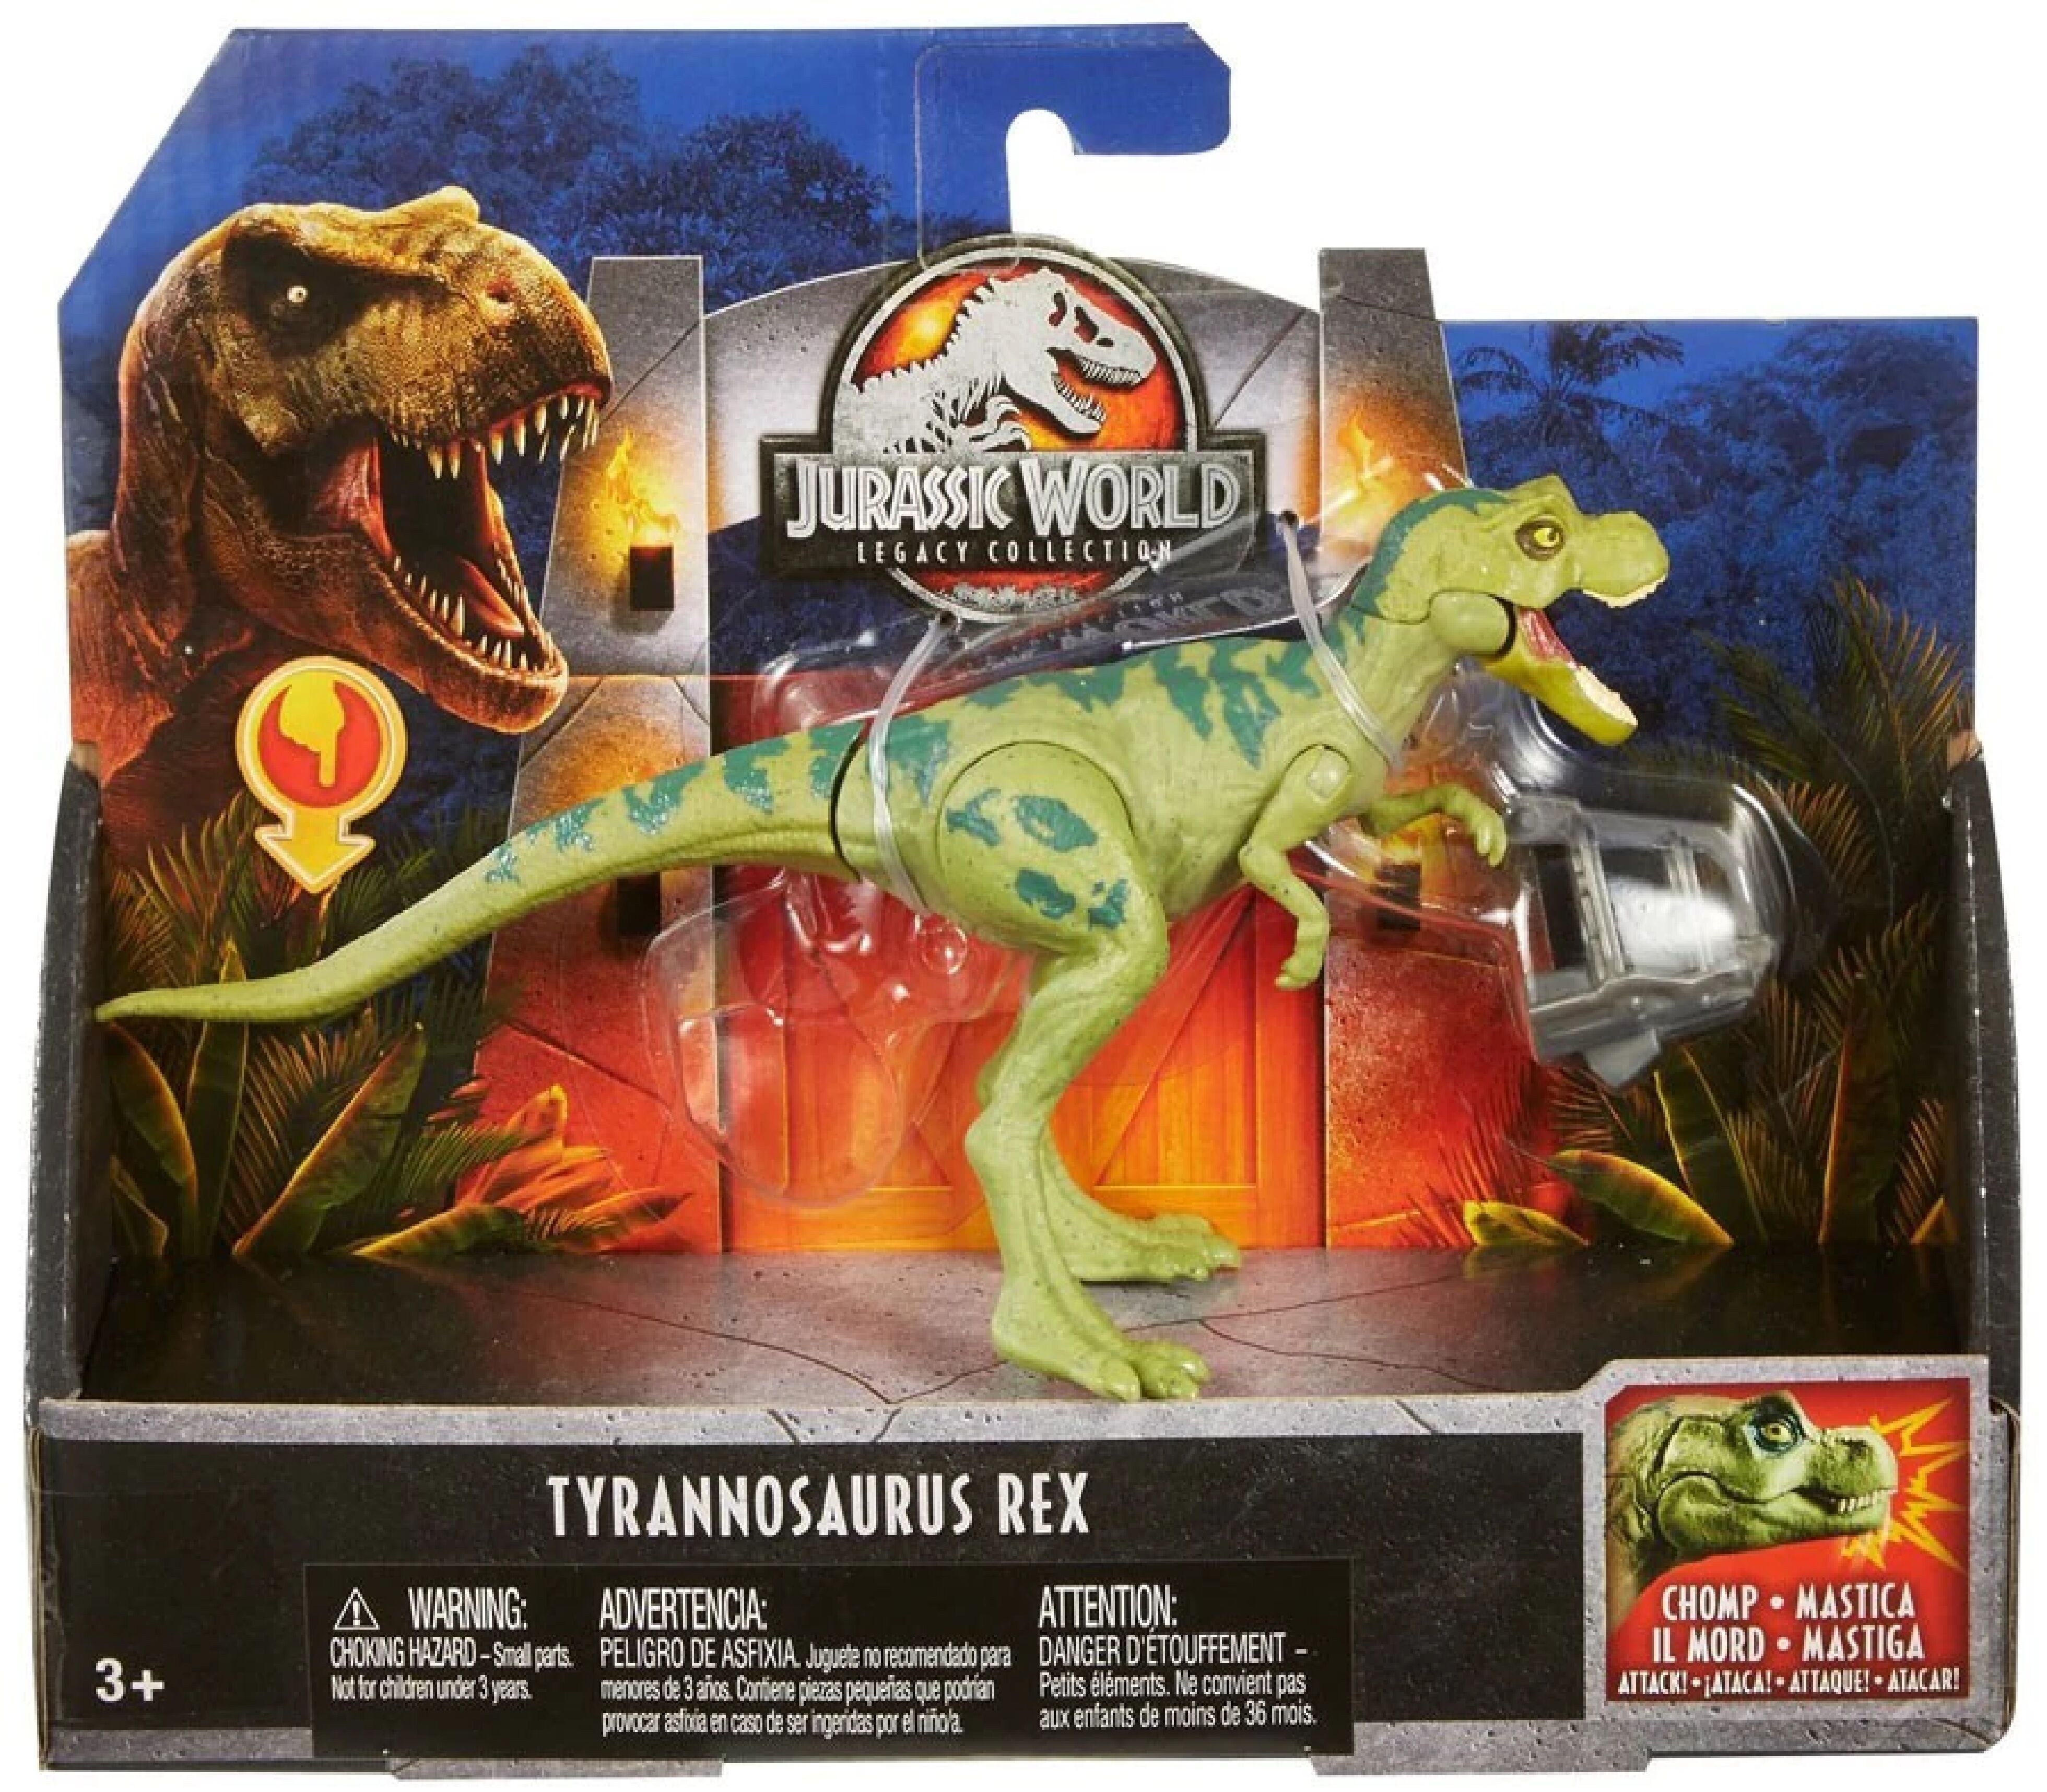 Мир динозавров игрушка. Набор Jurassic World Тиранозавр рекс fln69. Тираннозавр рекс игрушка мир Юрского периода 2. Тираннозавр Jurassic World Legacy collection игрушка. Тирекс игрушка мир Юрского периода.